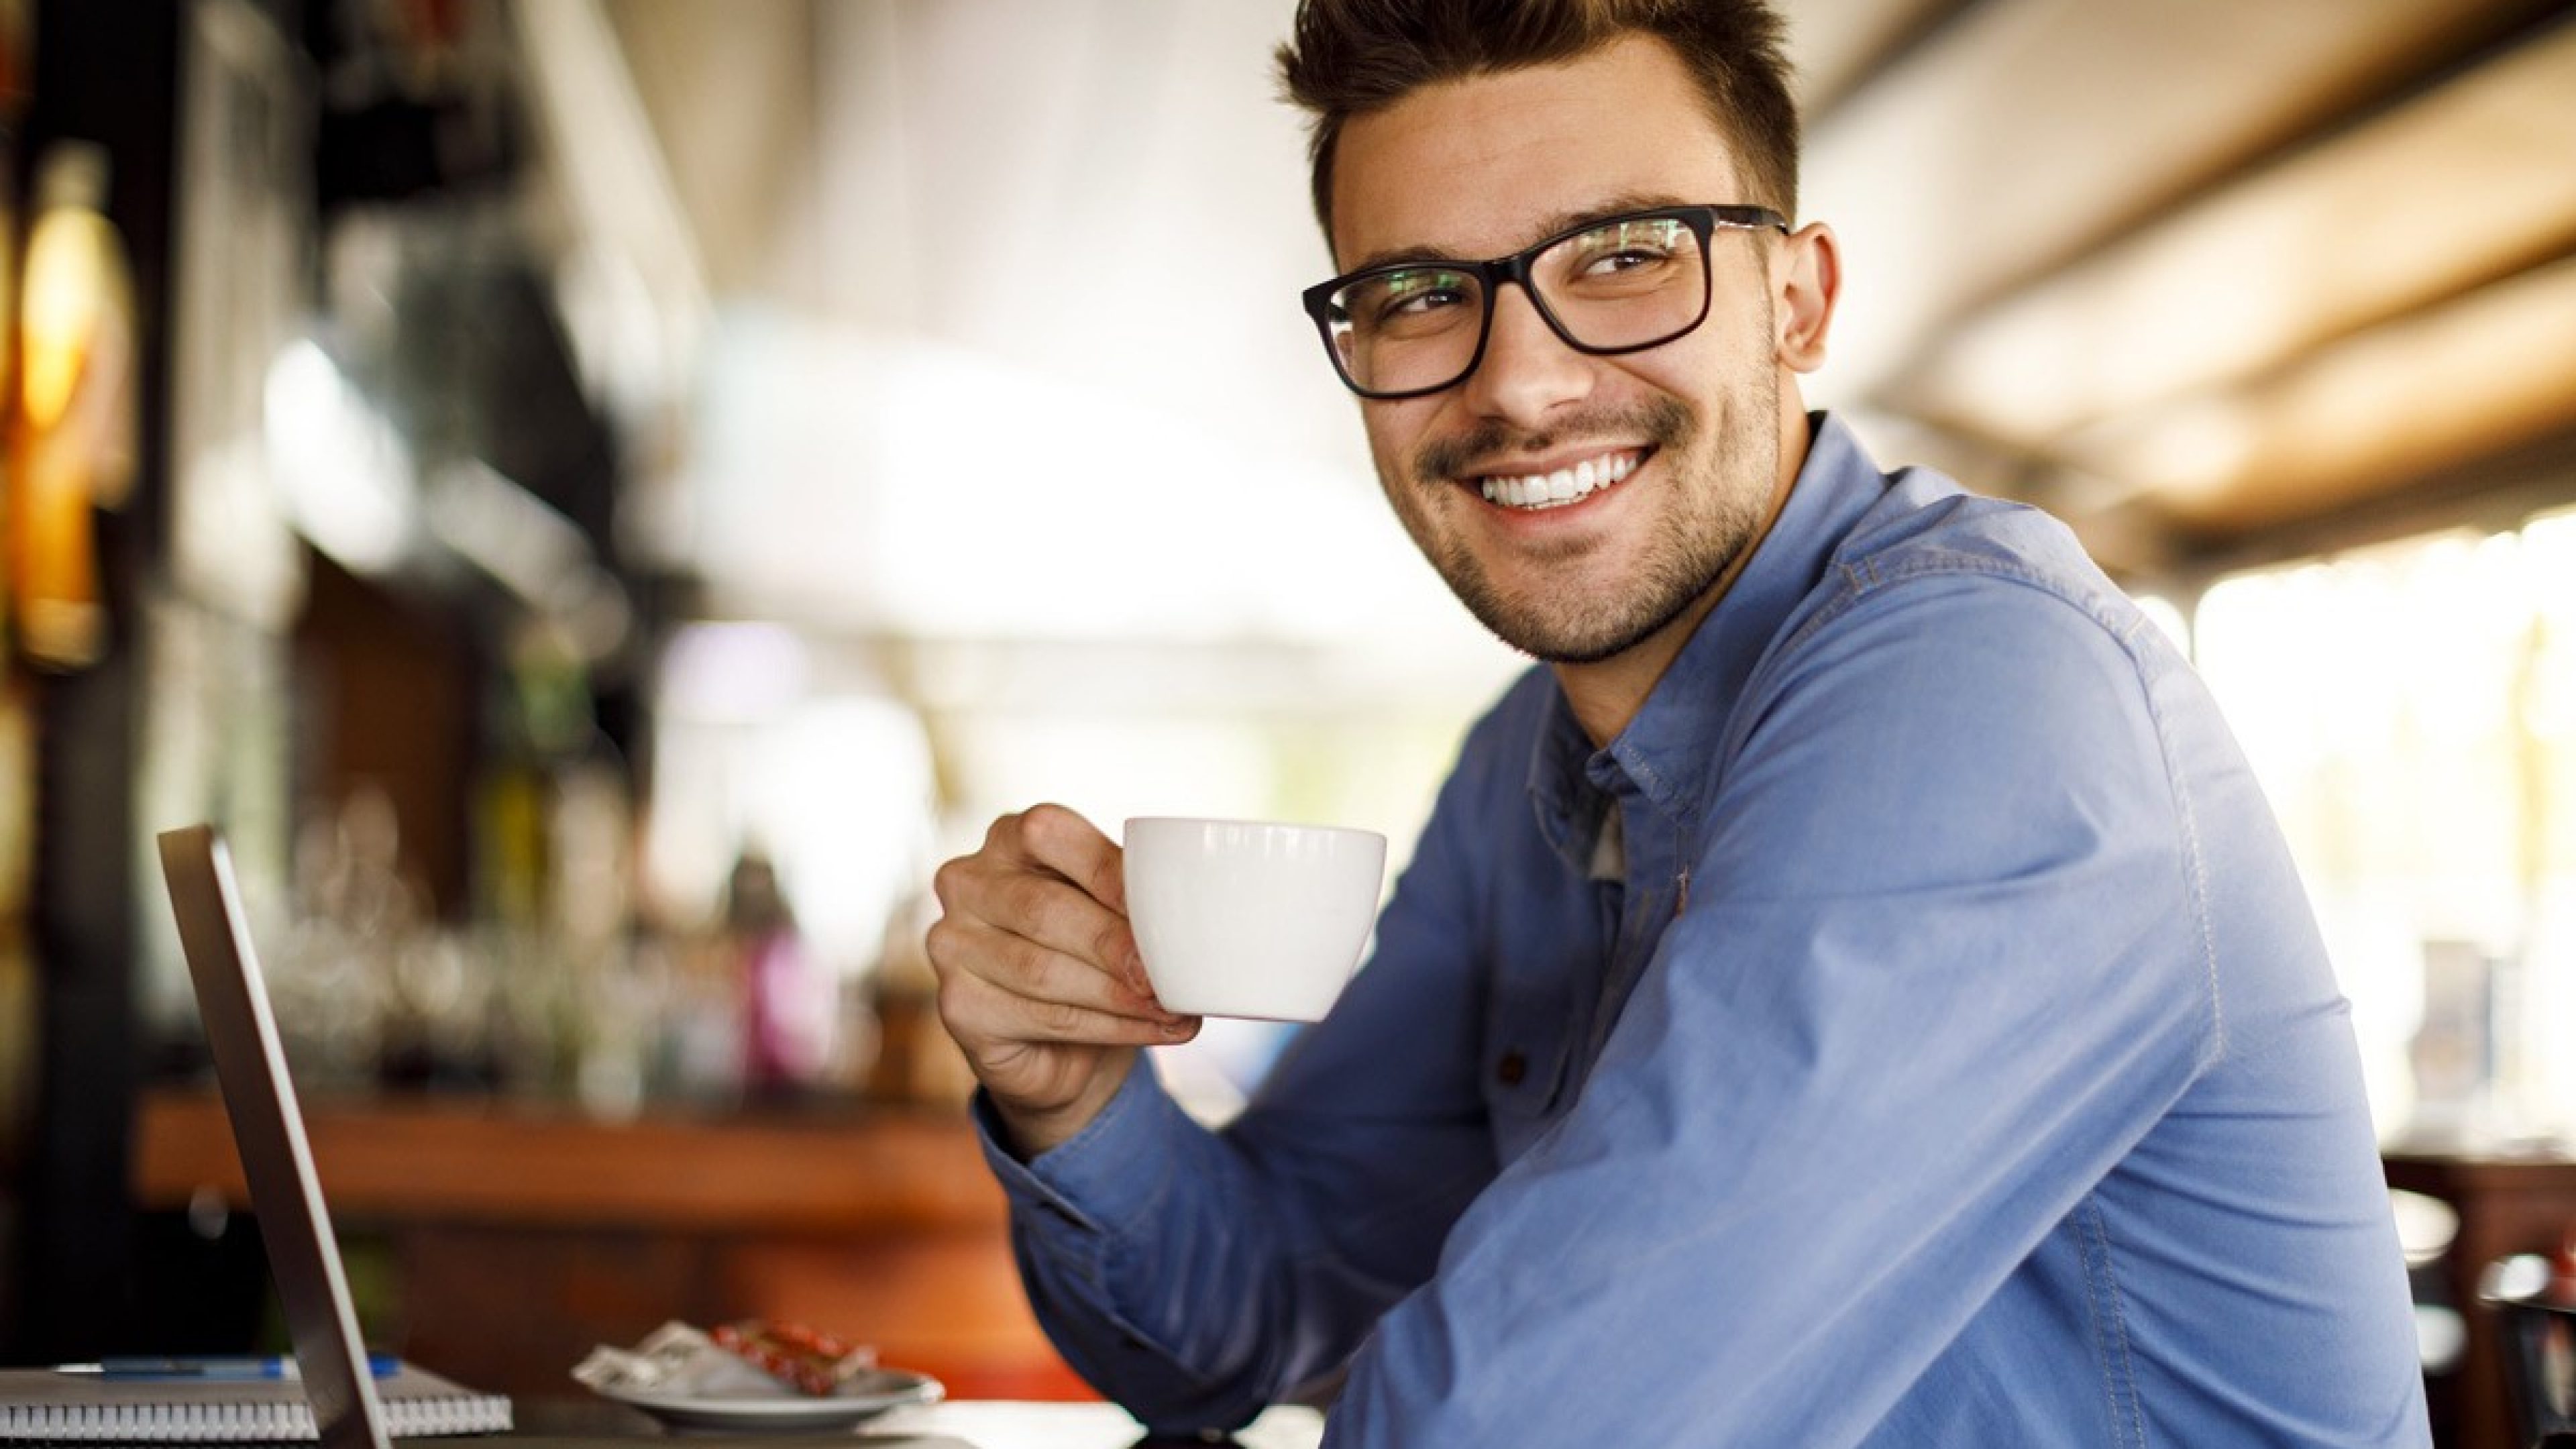 Mann arbeitet in einem Café und hält eine Tasse in der Hand